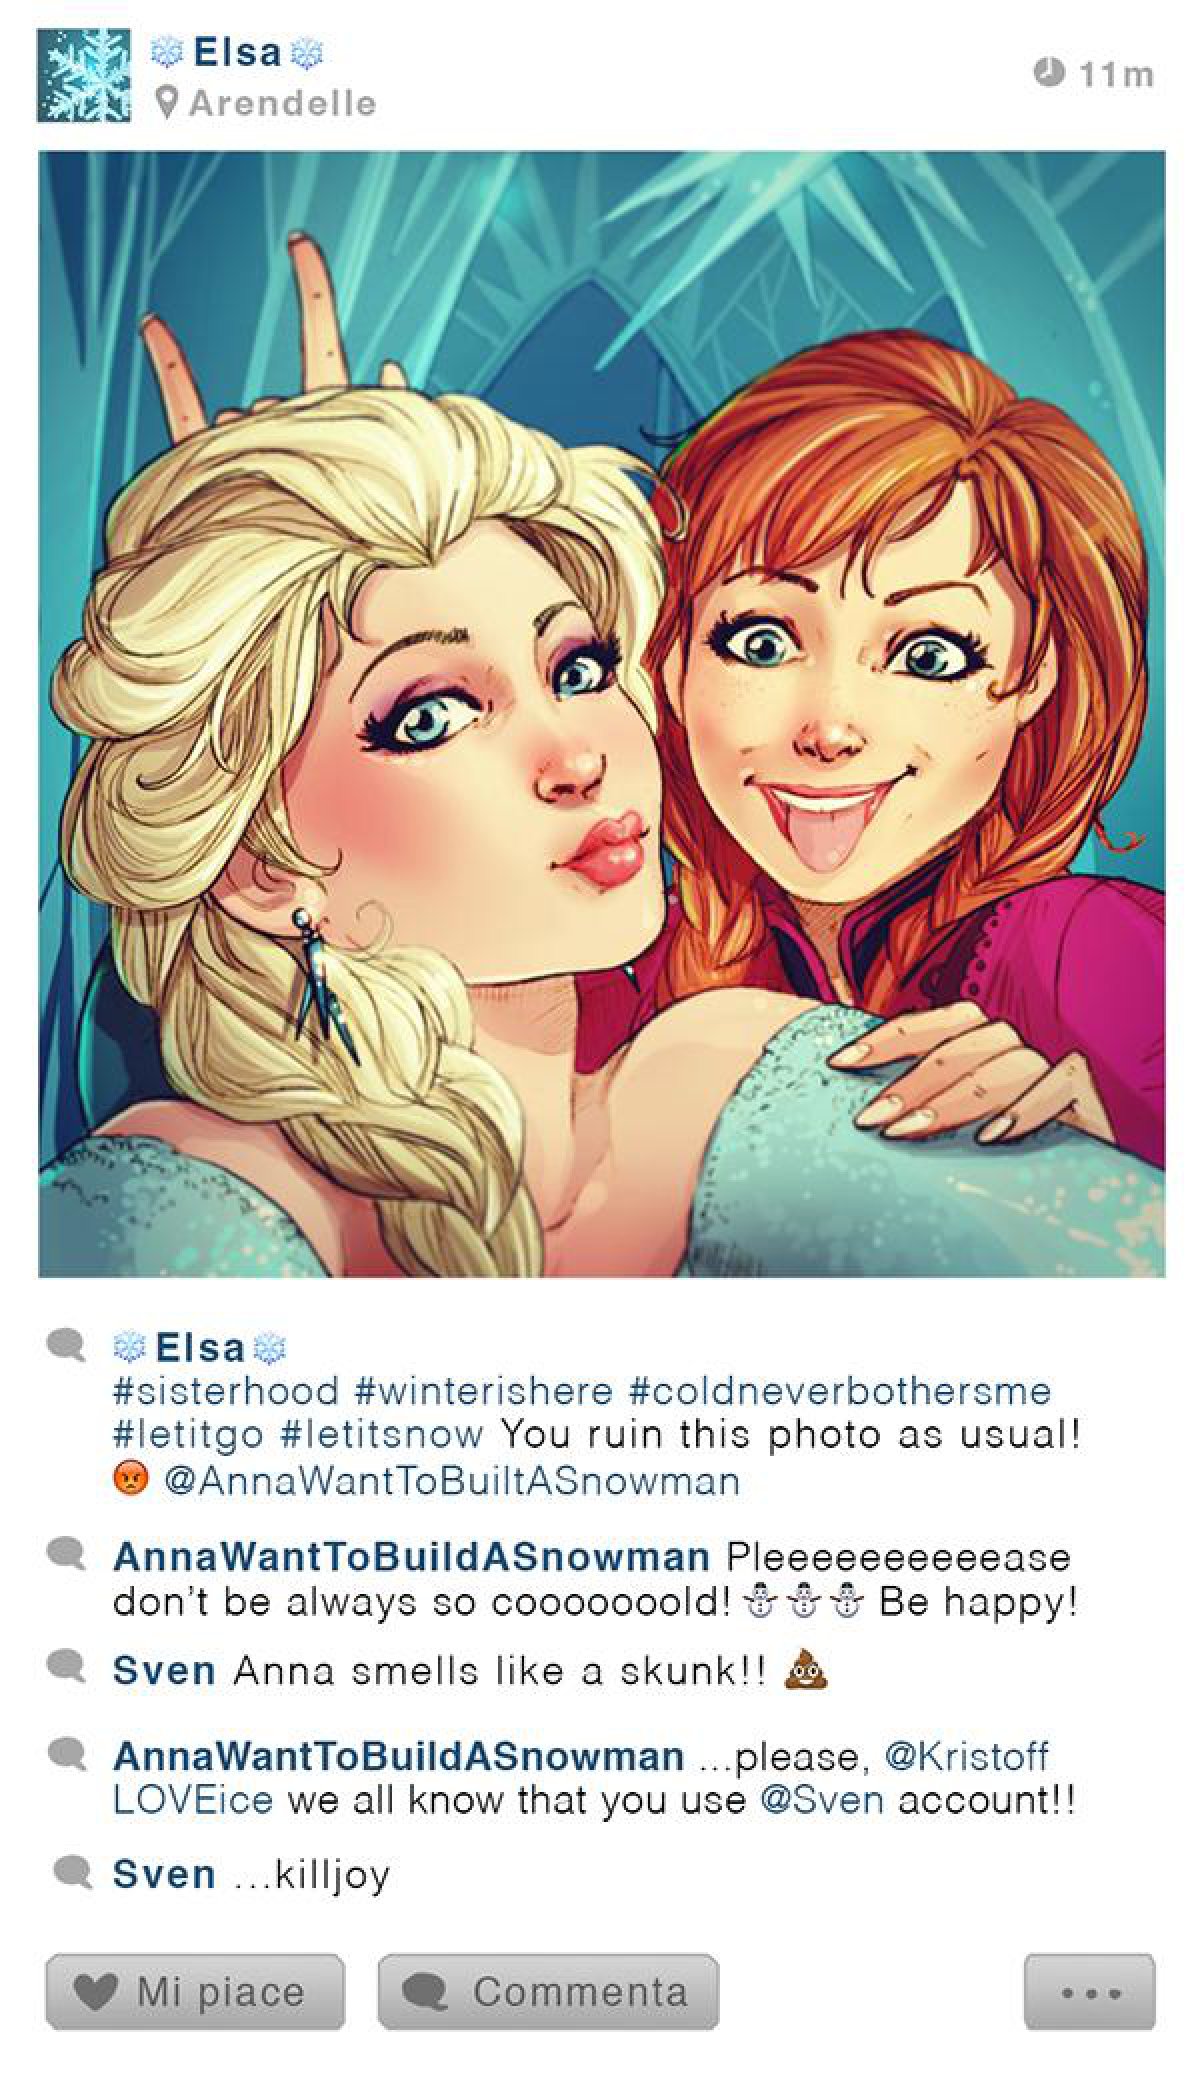 ¿Cómo sería el Instagram de los personajes de Disney?